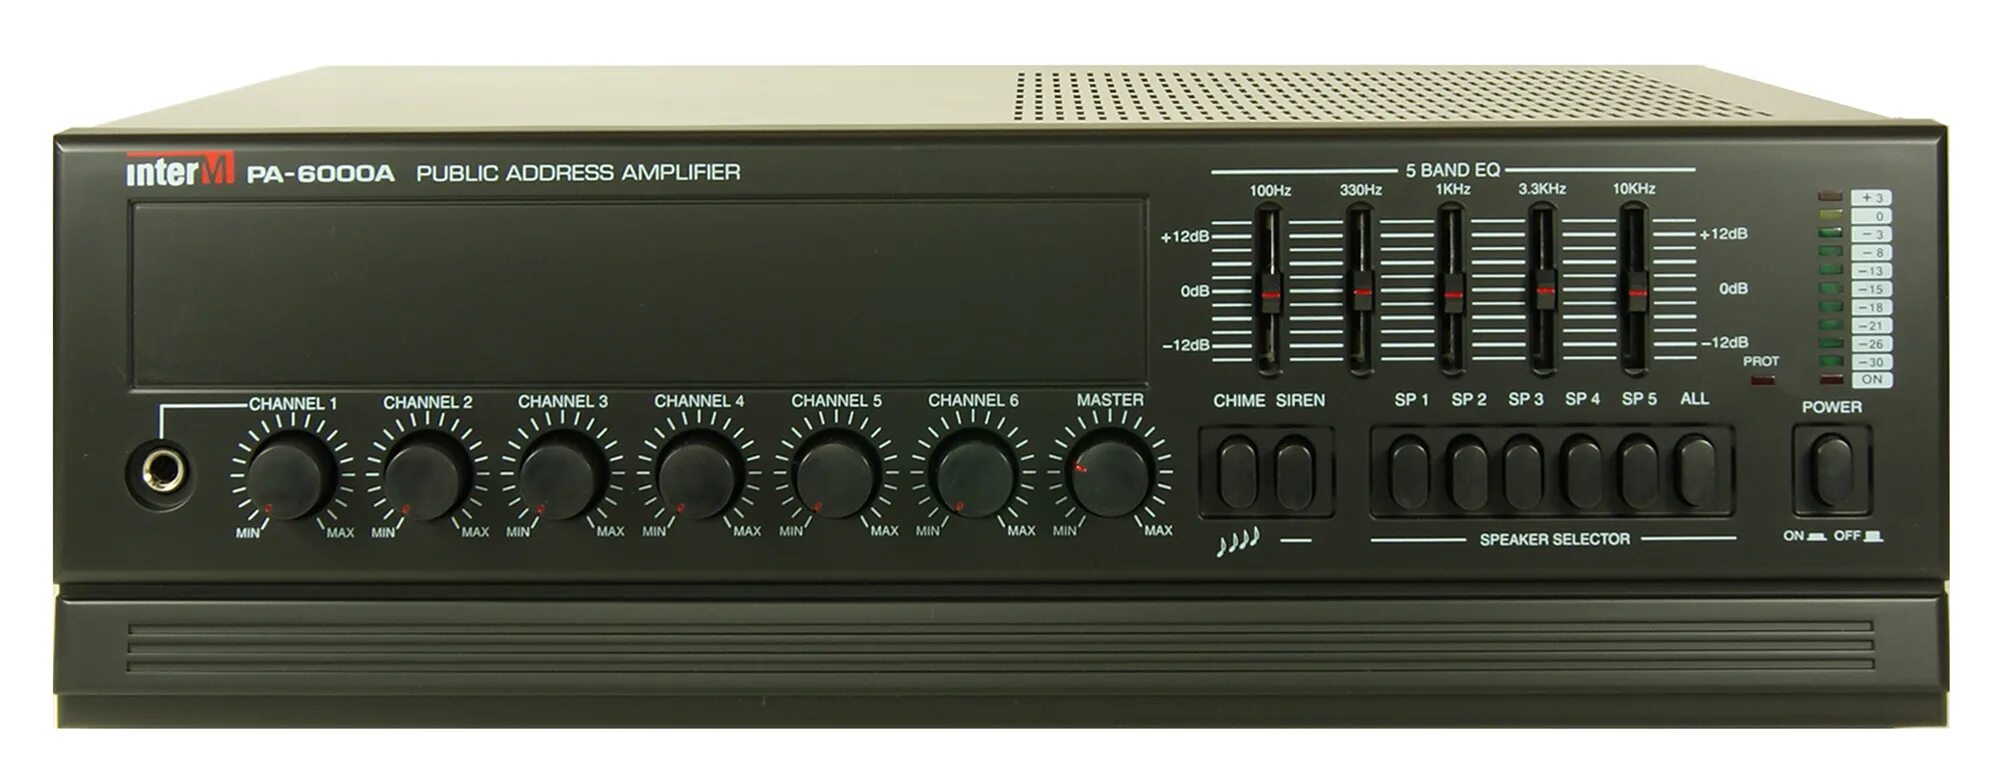 Усилитель inter m. Inter-m pa-6000a. DSPPA MP-310p. Pa-2000 Inter m. Трансляционный микшер усилитель alt -120вт/fam.